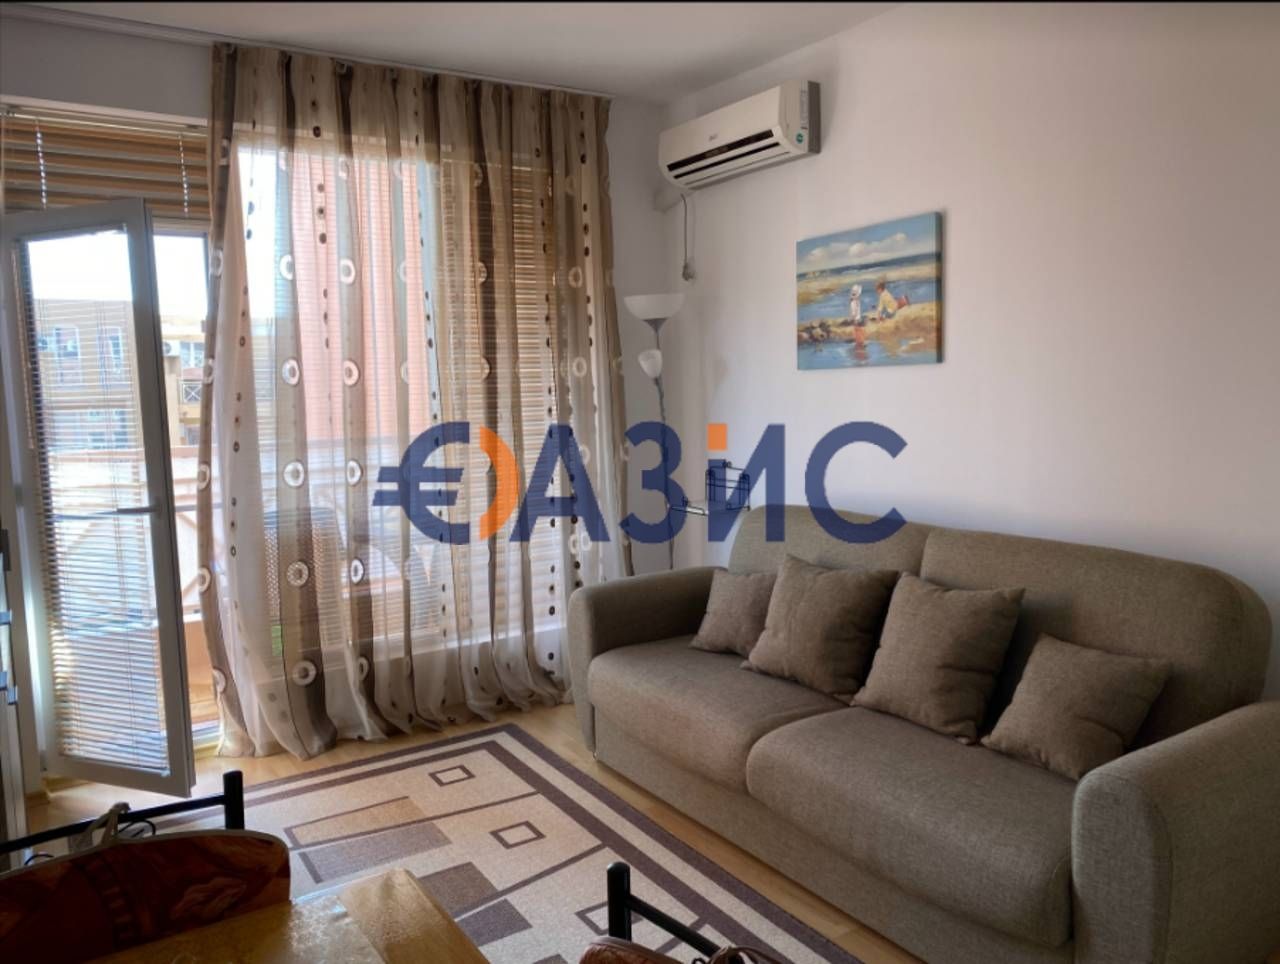 Apartment at Sunny Beach, Bulgaria, 34 sq.m - picture 1